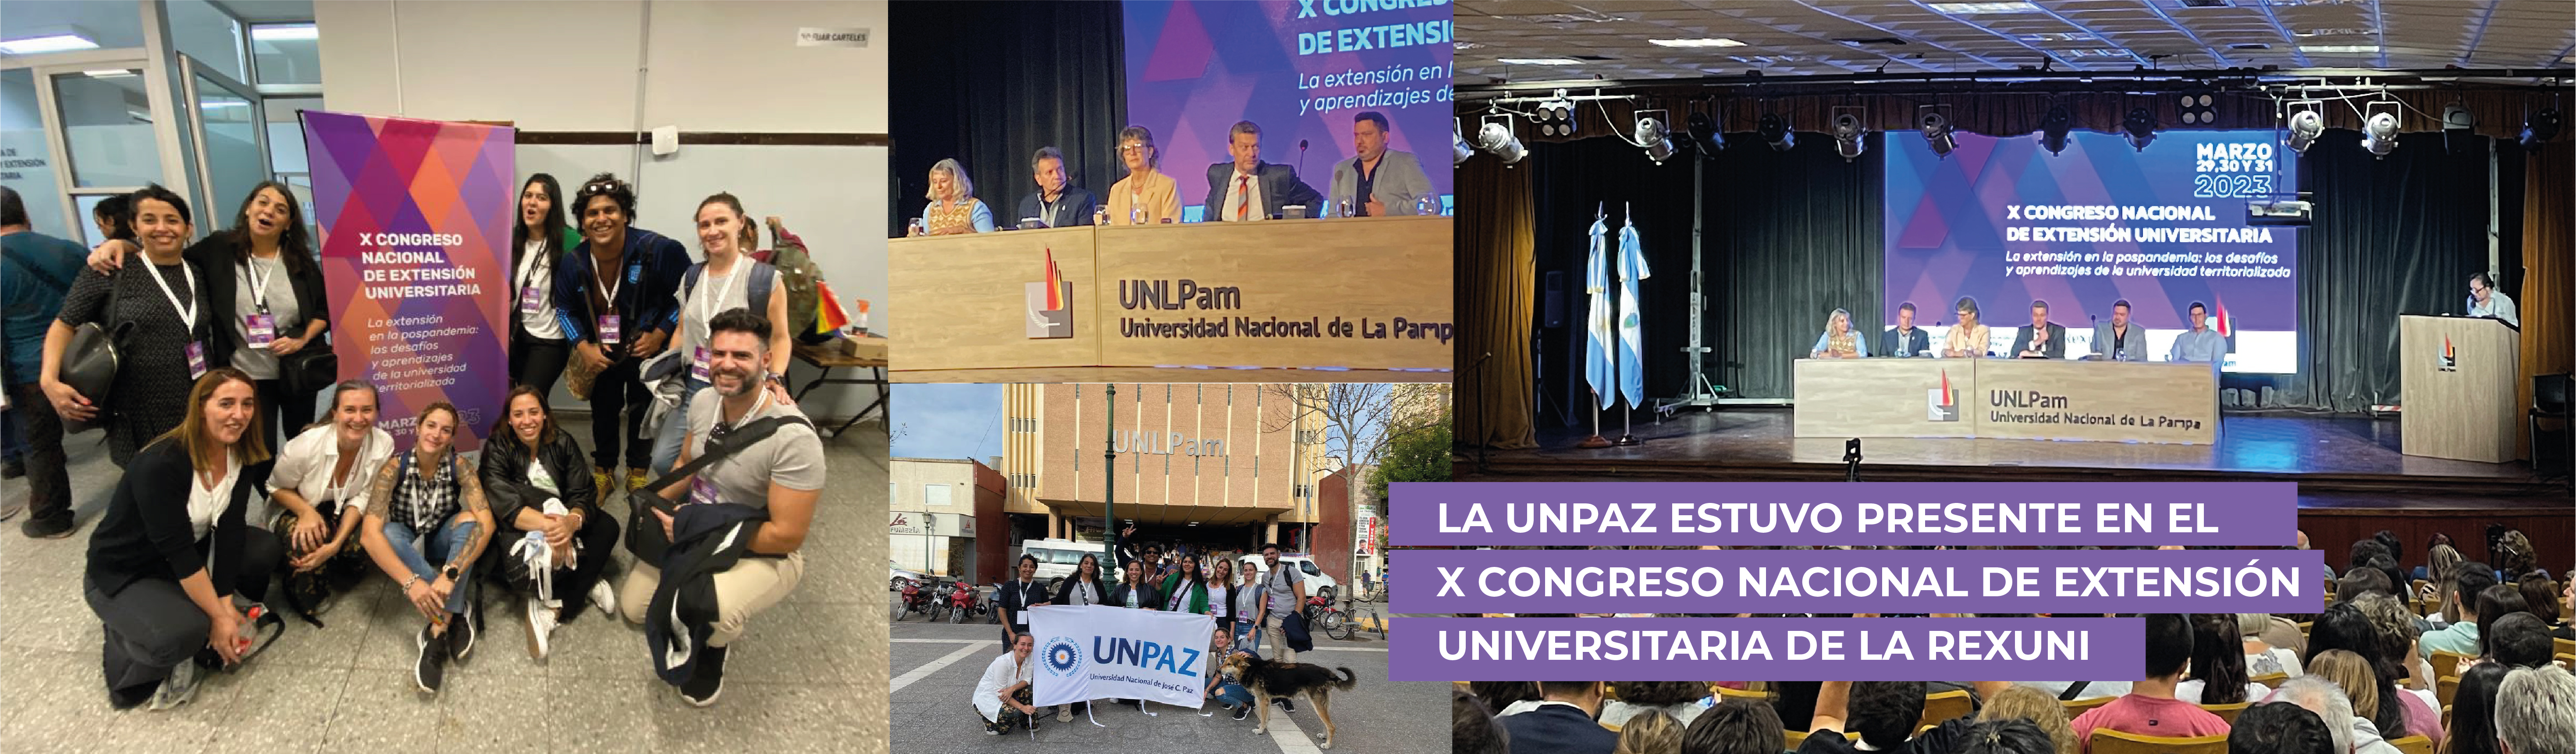 La UNPAZ estuvo presente en el  X Congreso Nacional de Extensión Universitaria de la REXUNI